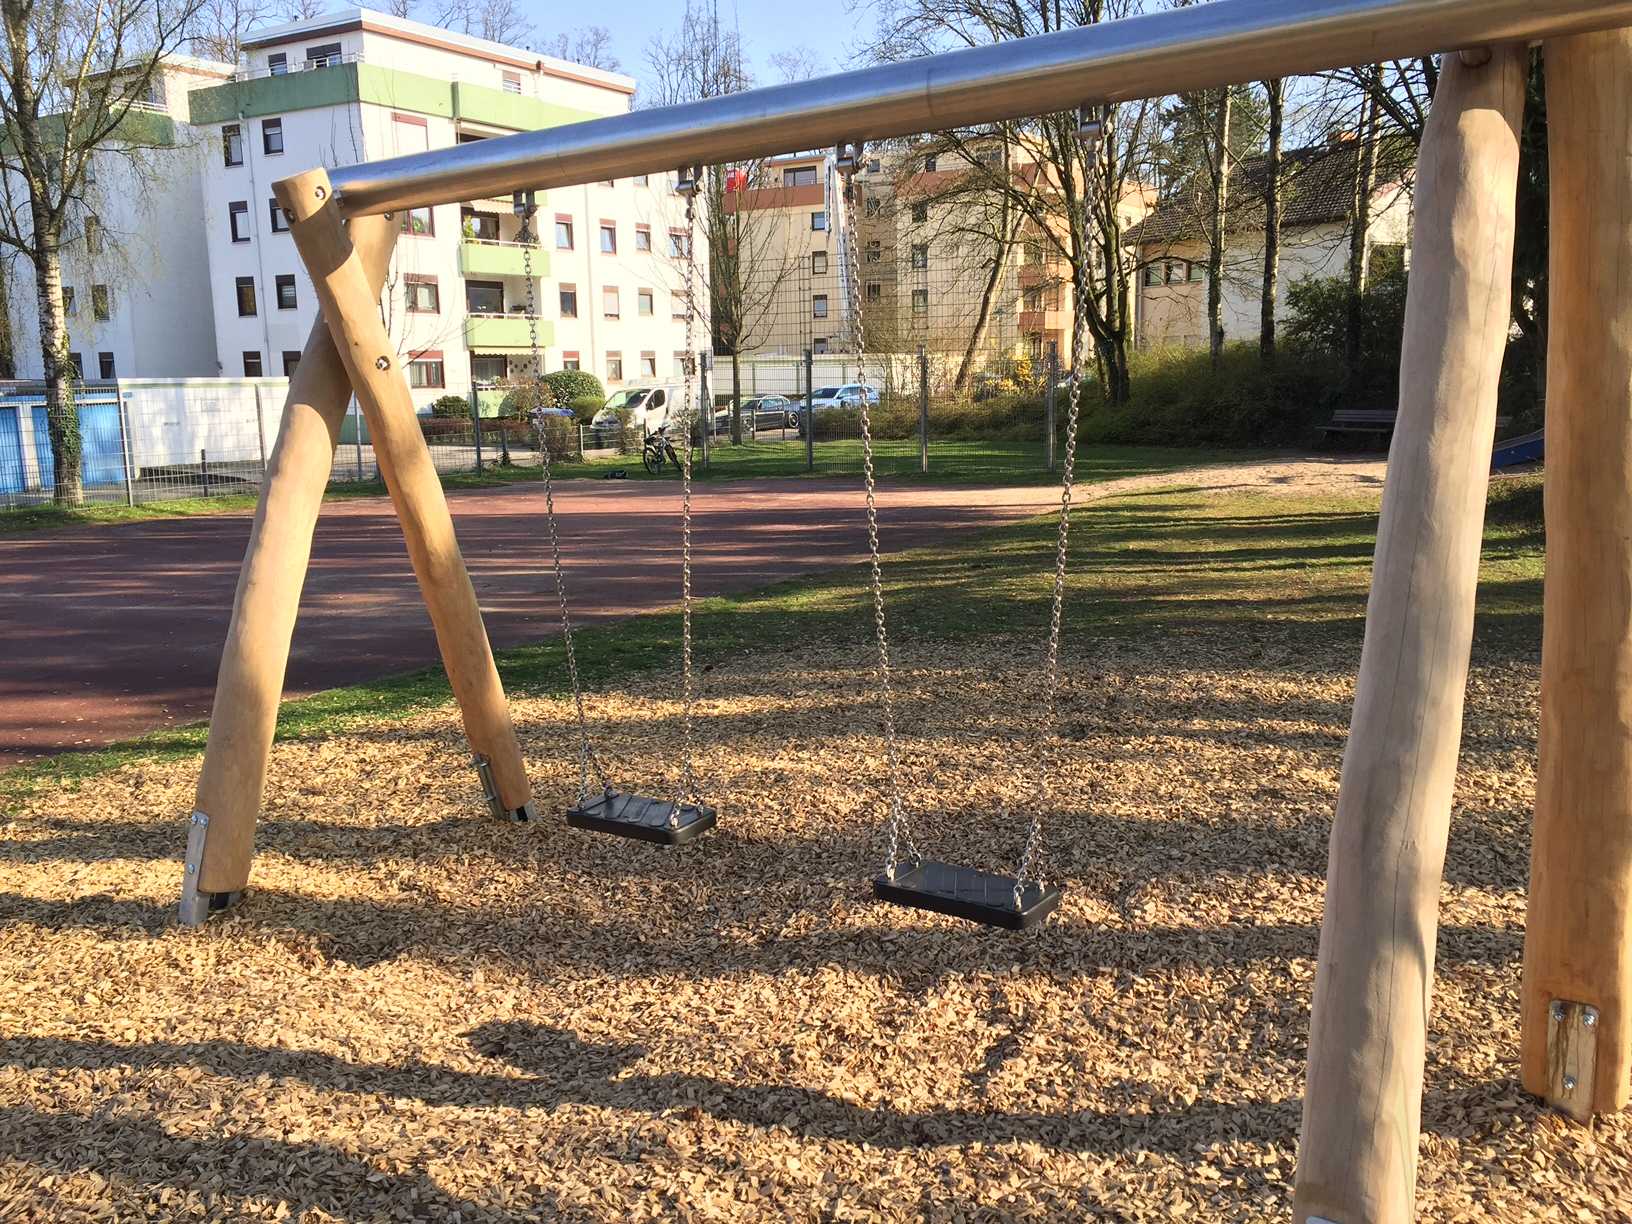 Schaukelsitze auf öffentlichem Kinderspielplatz in Baiertal manipuliert